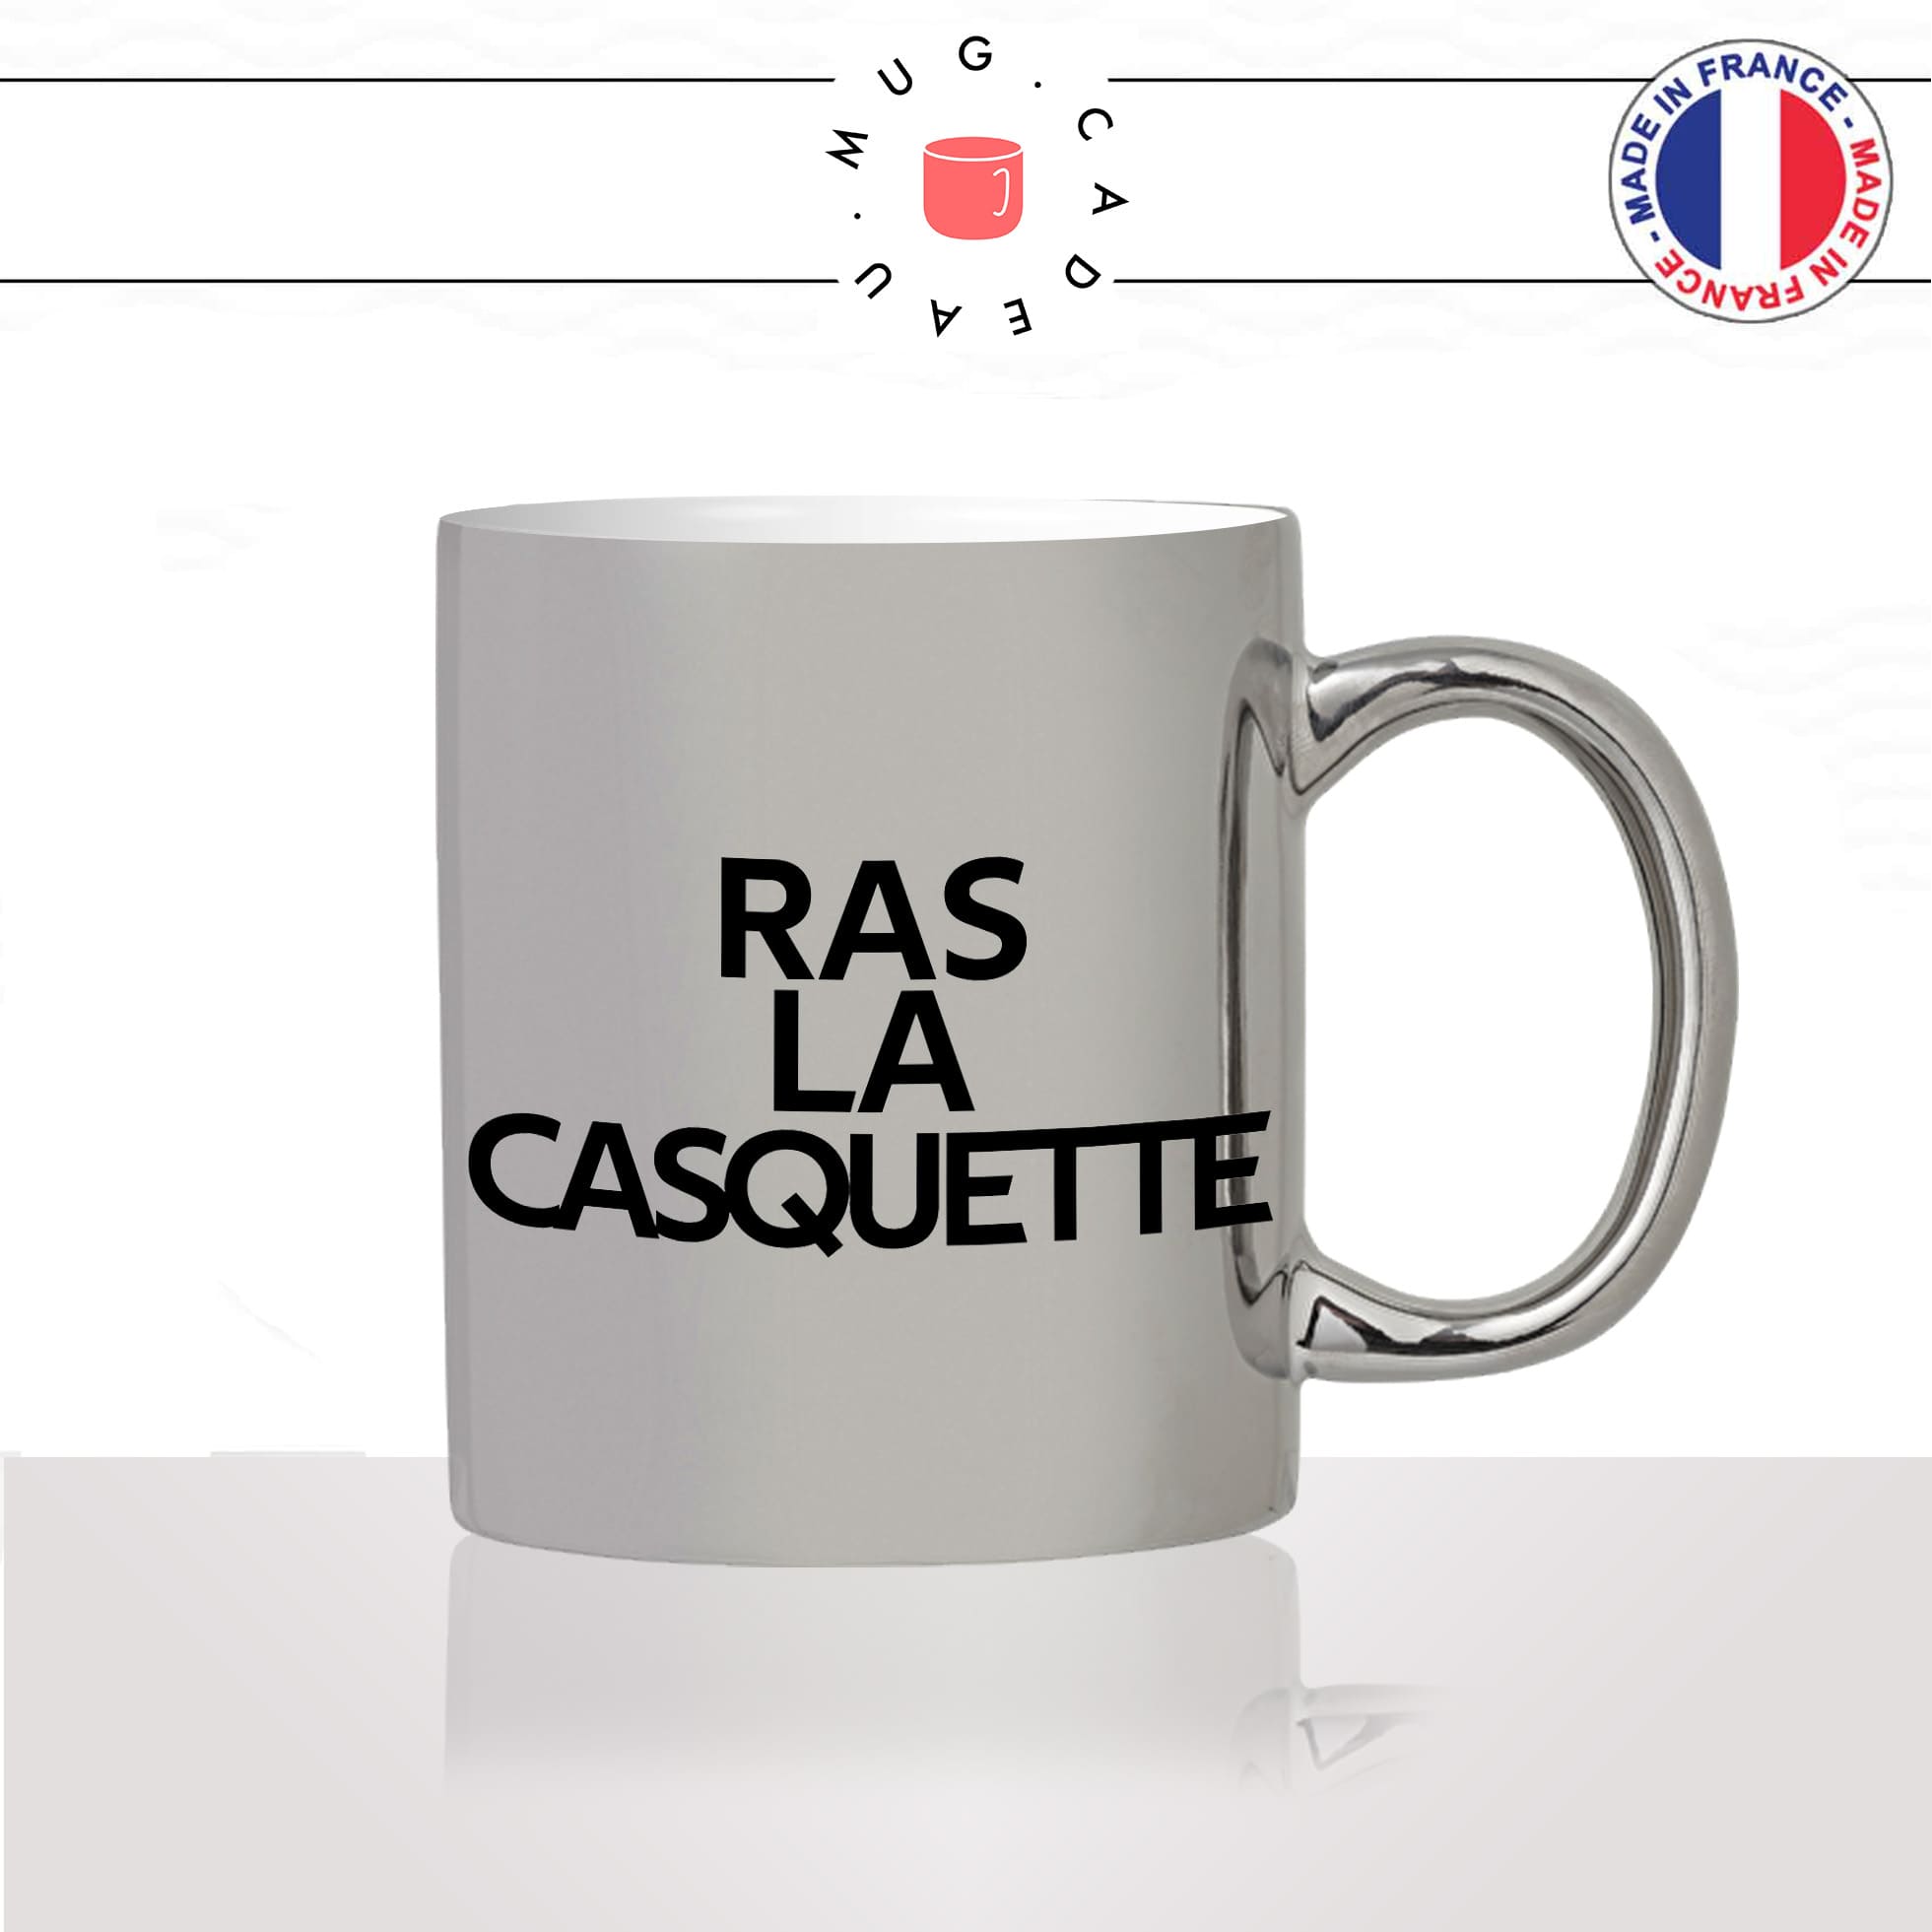 mug-tasse-argenté-argent-gris-silver-ras-la-casquette-expression-francaise-jen-ai-marre-humour-fun-idée-cadeau-originale-cool2